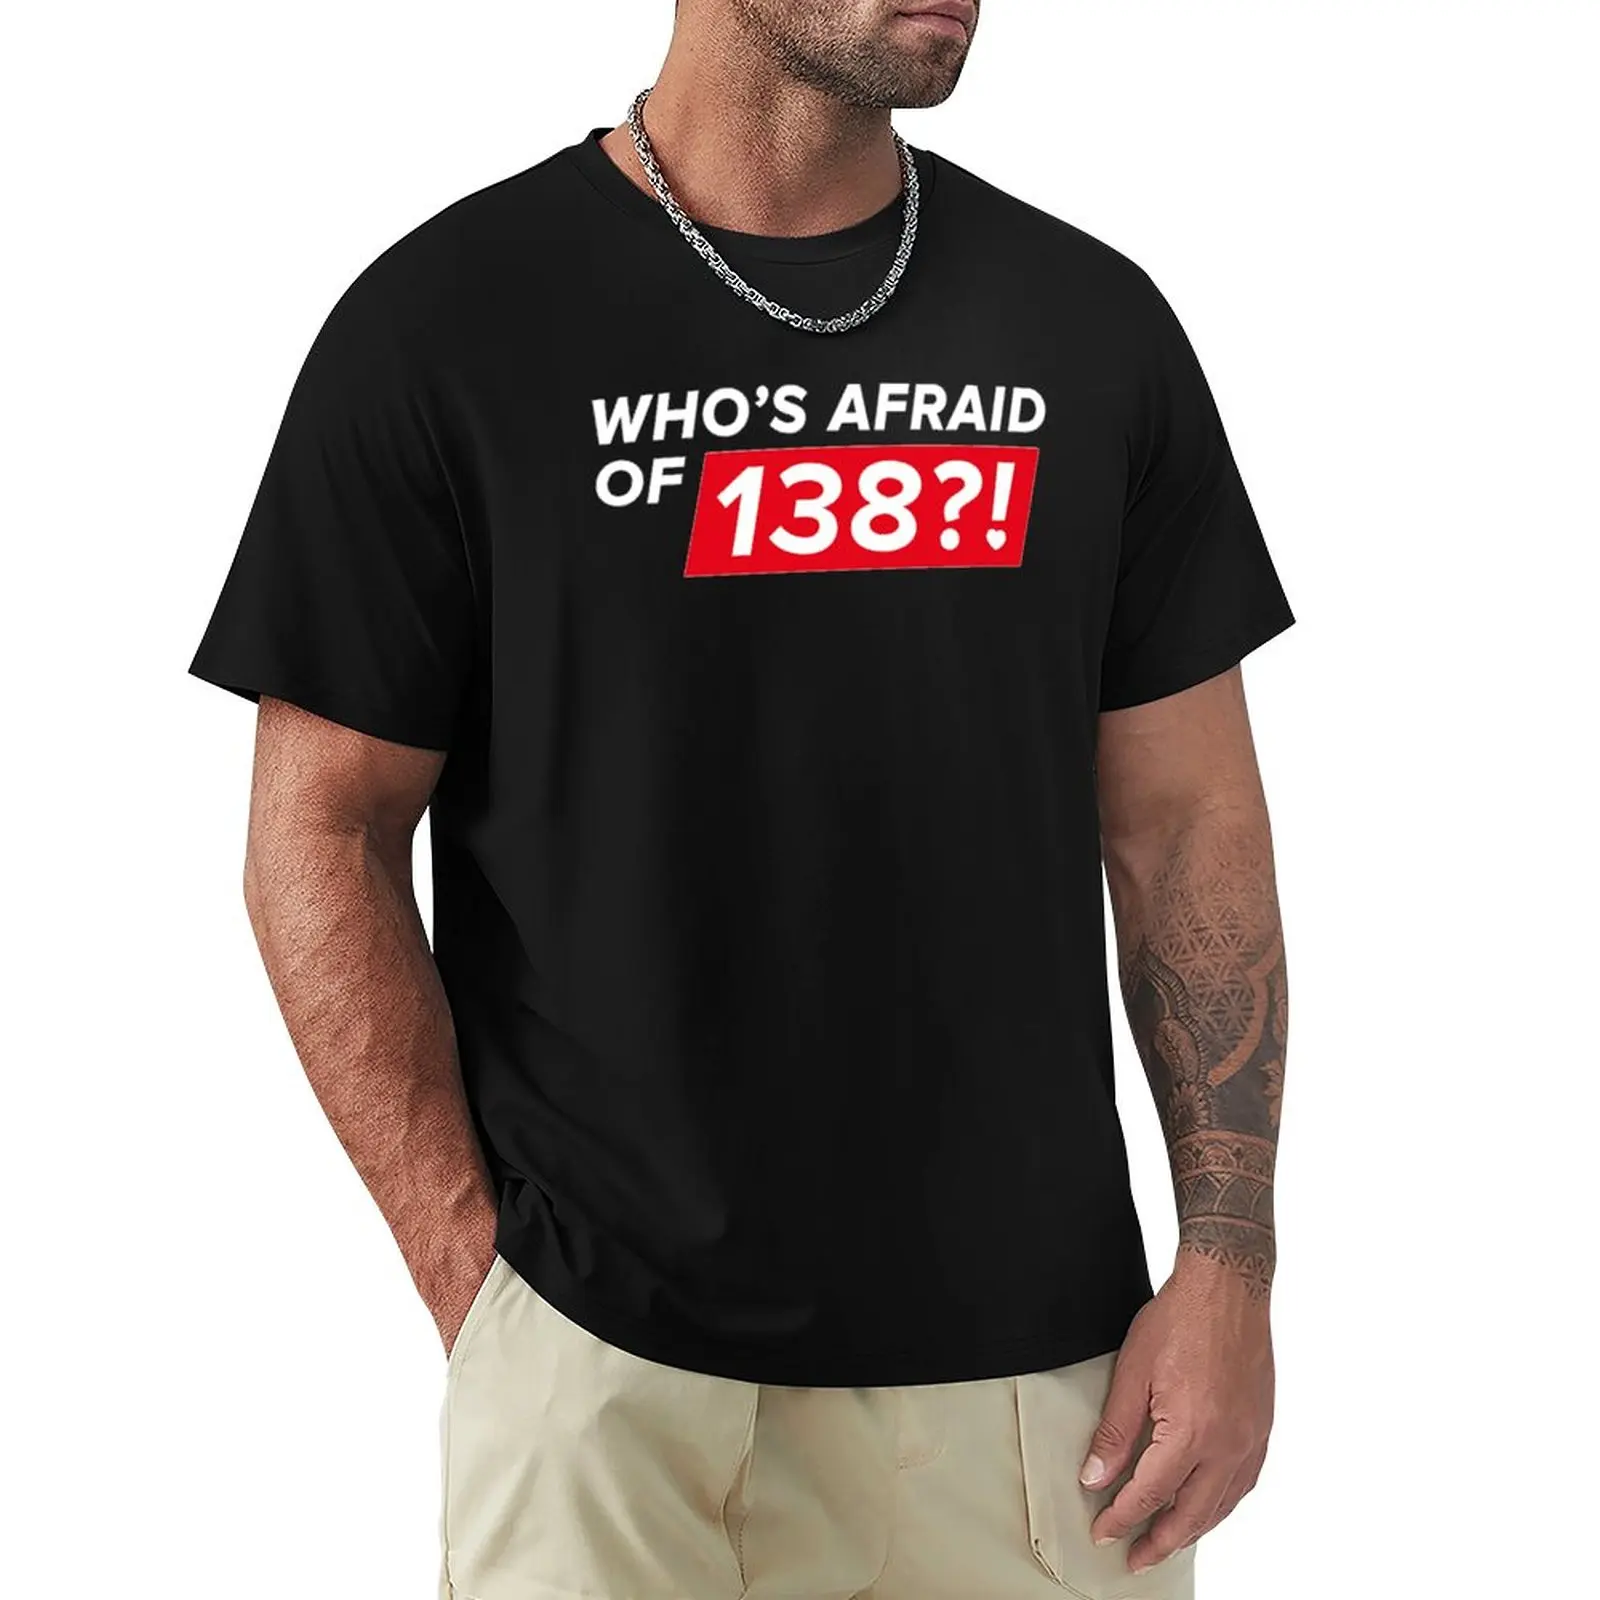 

Модная футболка humor, которая боится 138! Футболка мужская с графическим принтом, рубашка в стиле хип-хоп, черный цвет